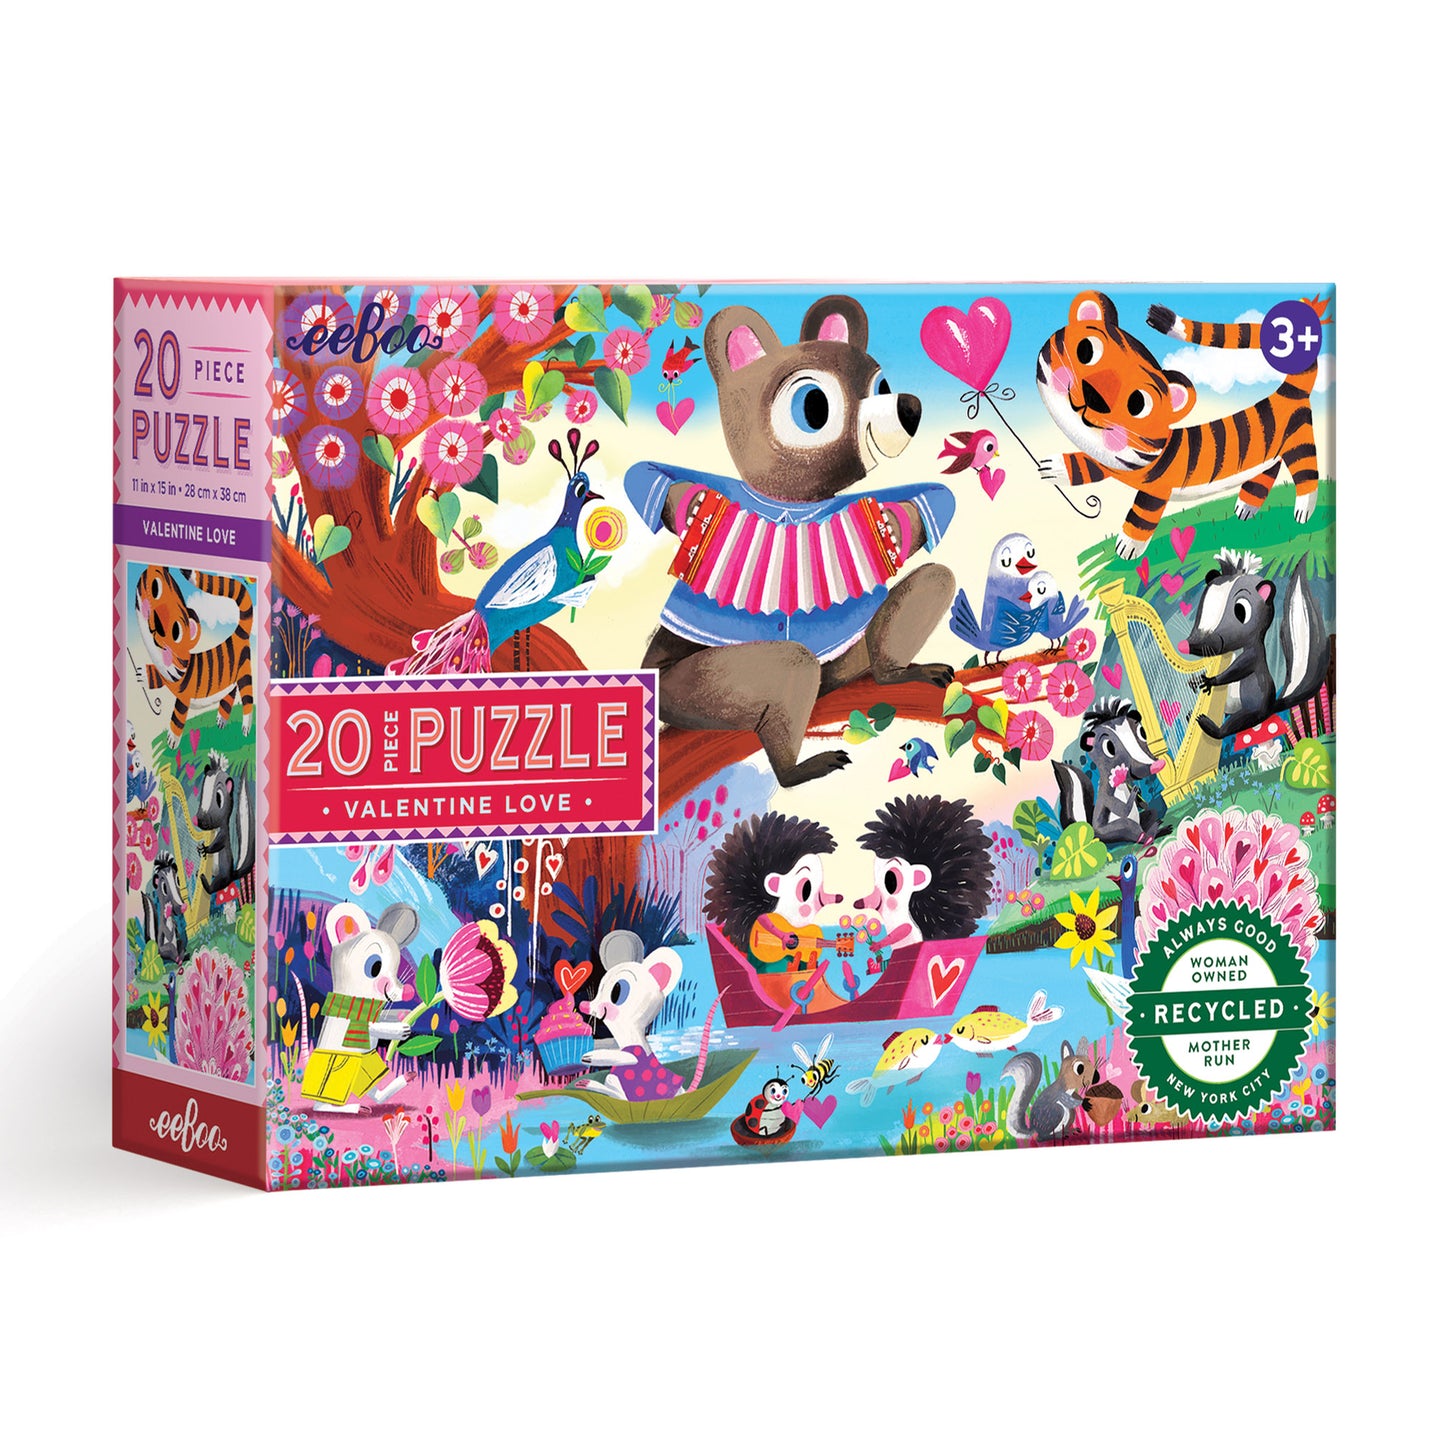 2 puzzles de 20 pieces - minnie, puzzle